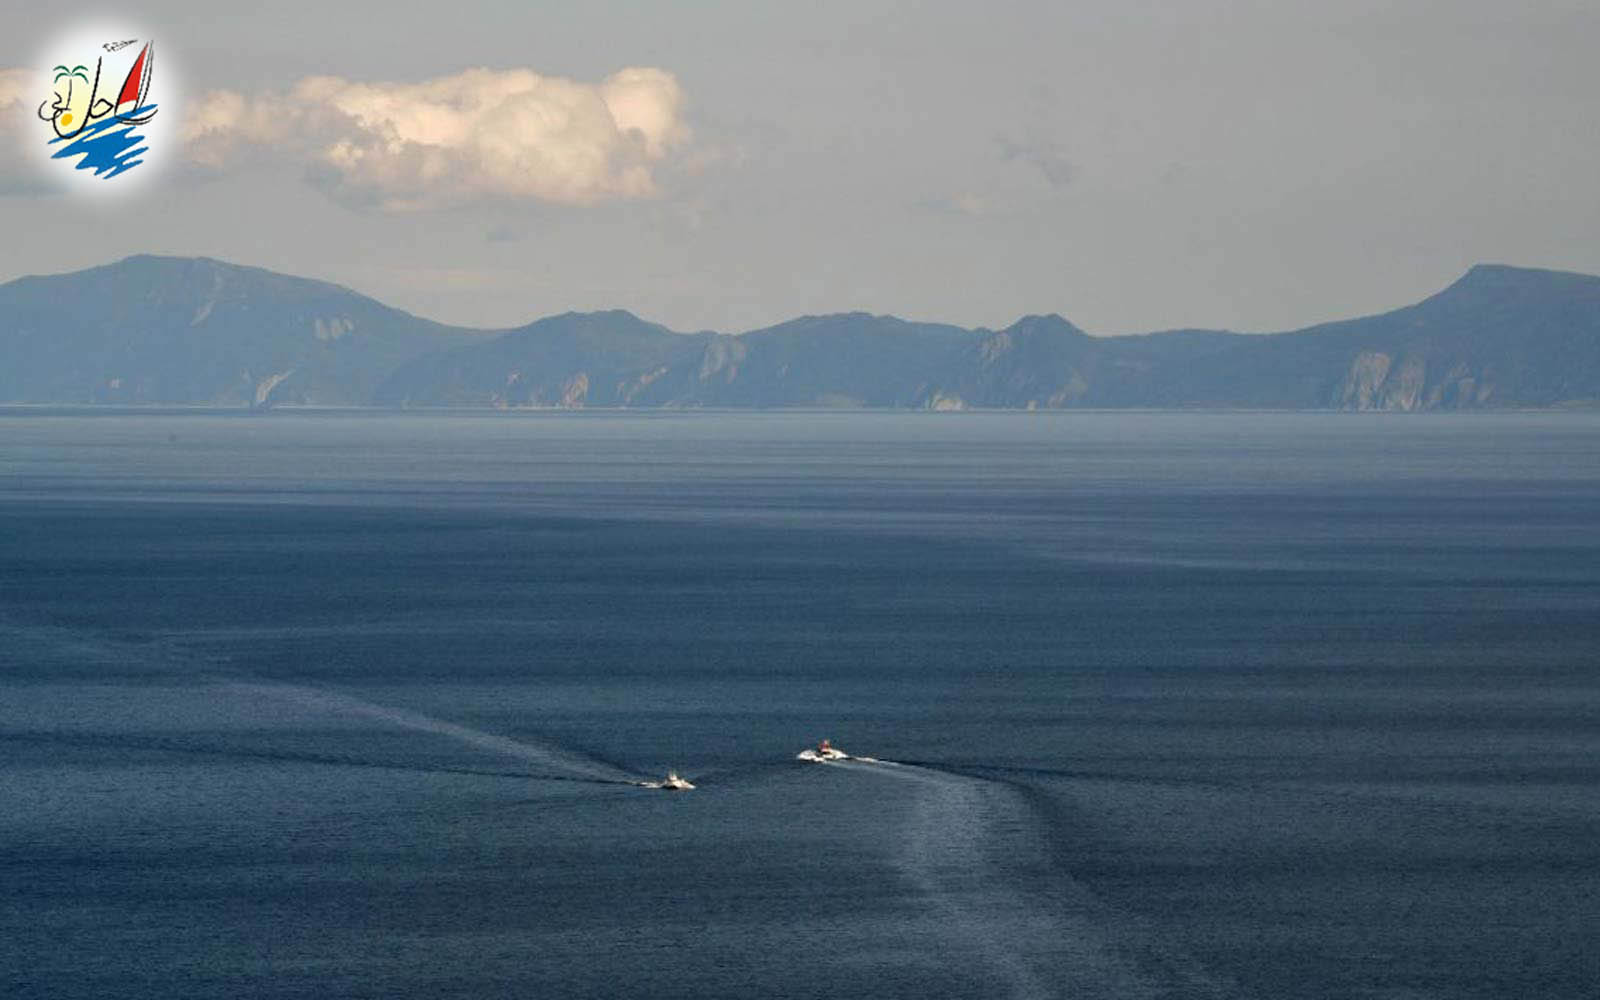    خبر جزیره مدفون در دریای ژاپن